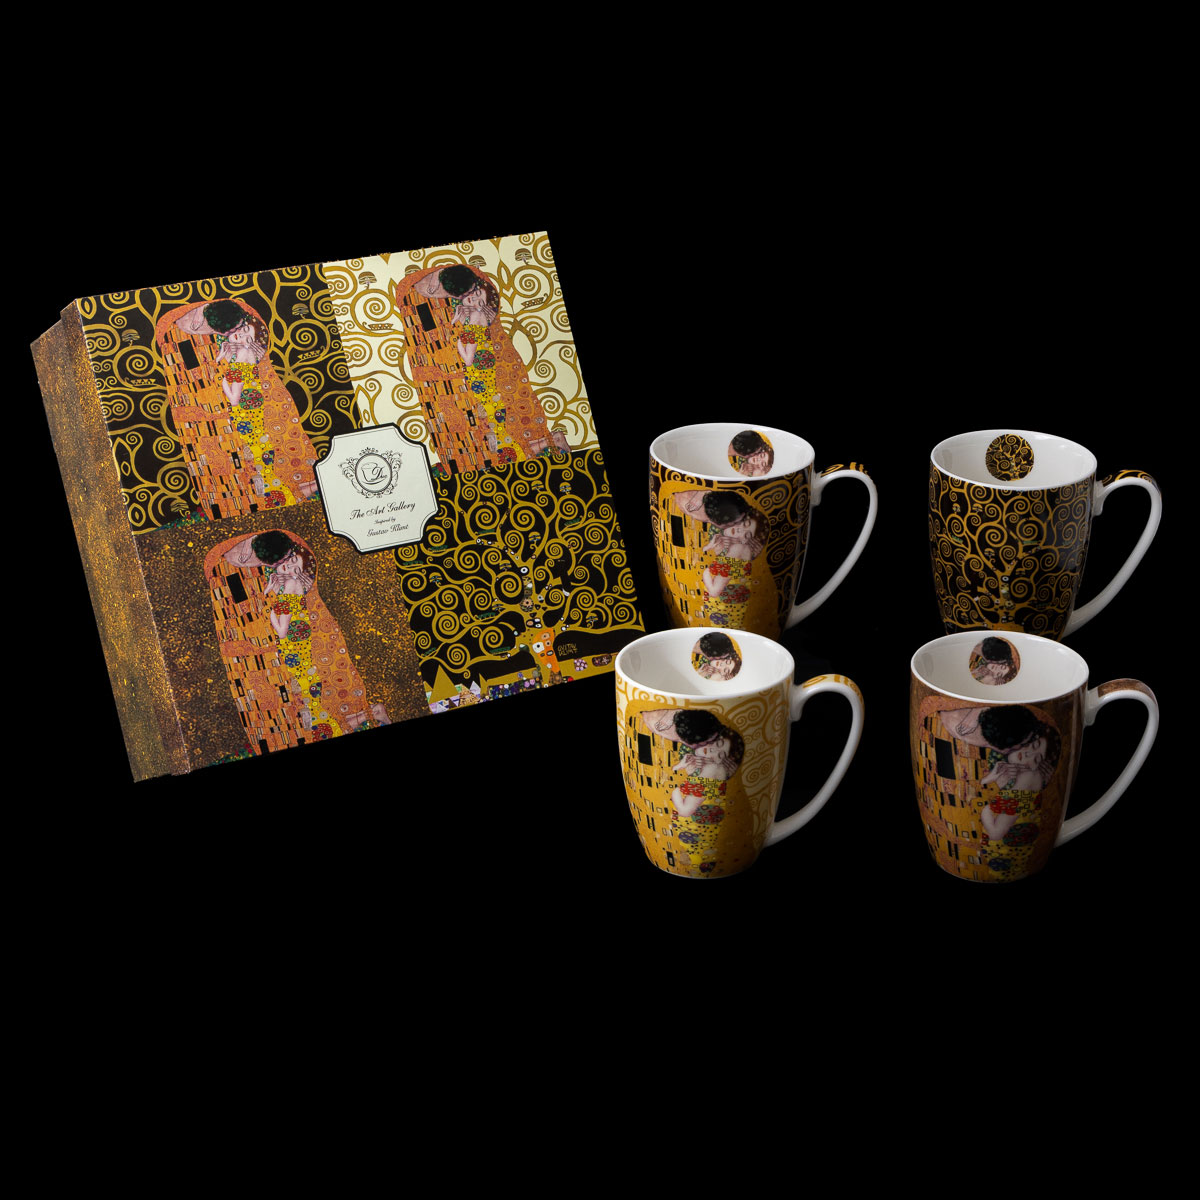 ➤ Gustav Klimt The Kiss Latte Macchiato Glasses Elegant Collection - DELUXE  by MJS